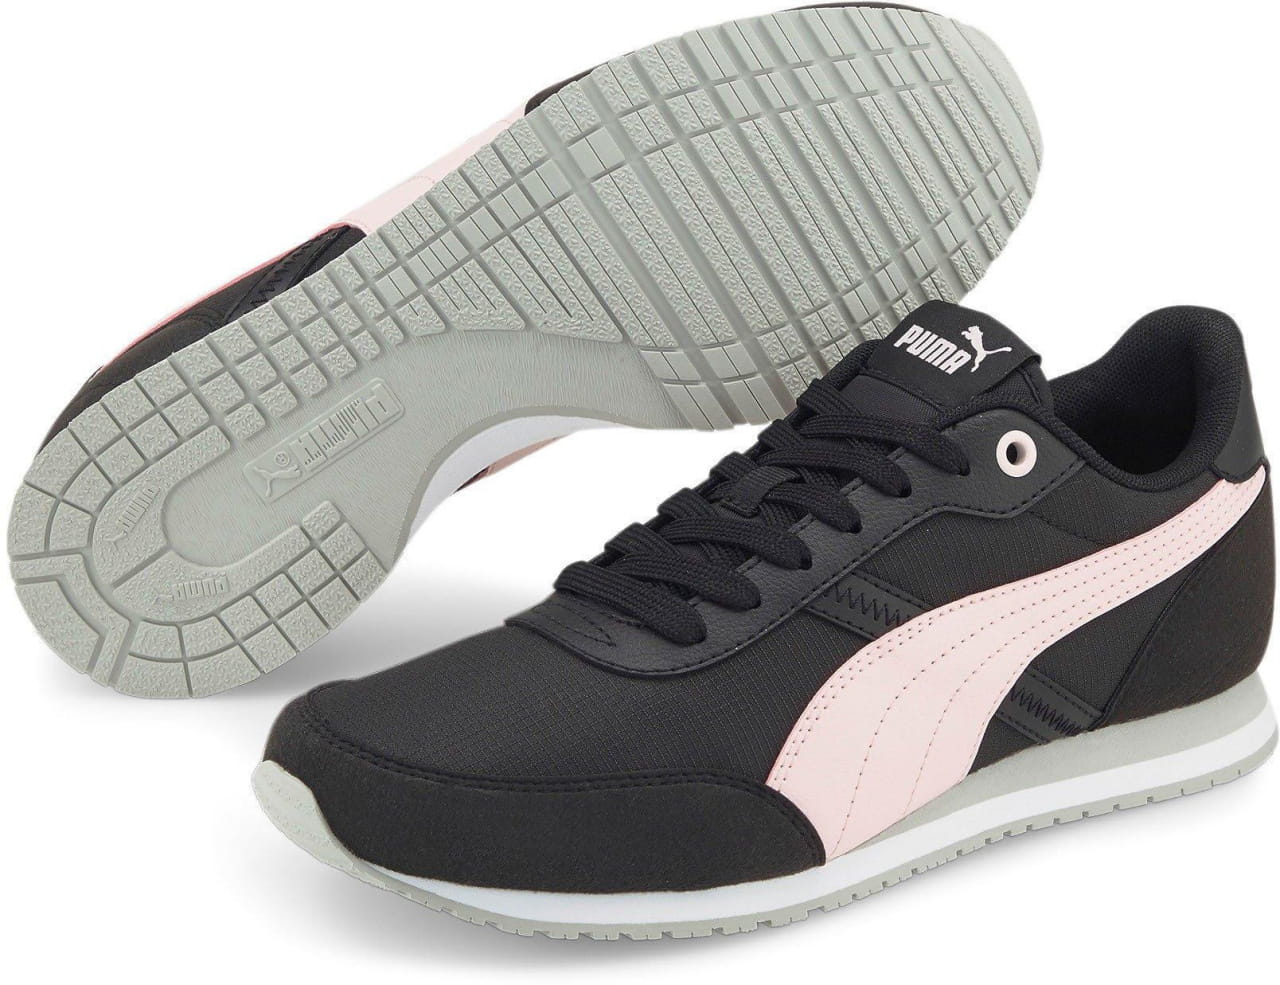 Zapatos de ocio unisex Puma St Runner Essential